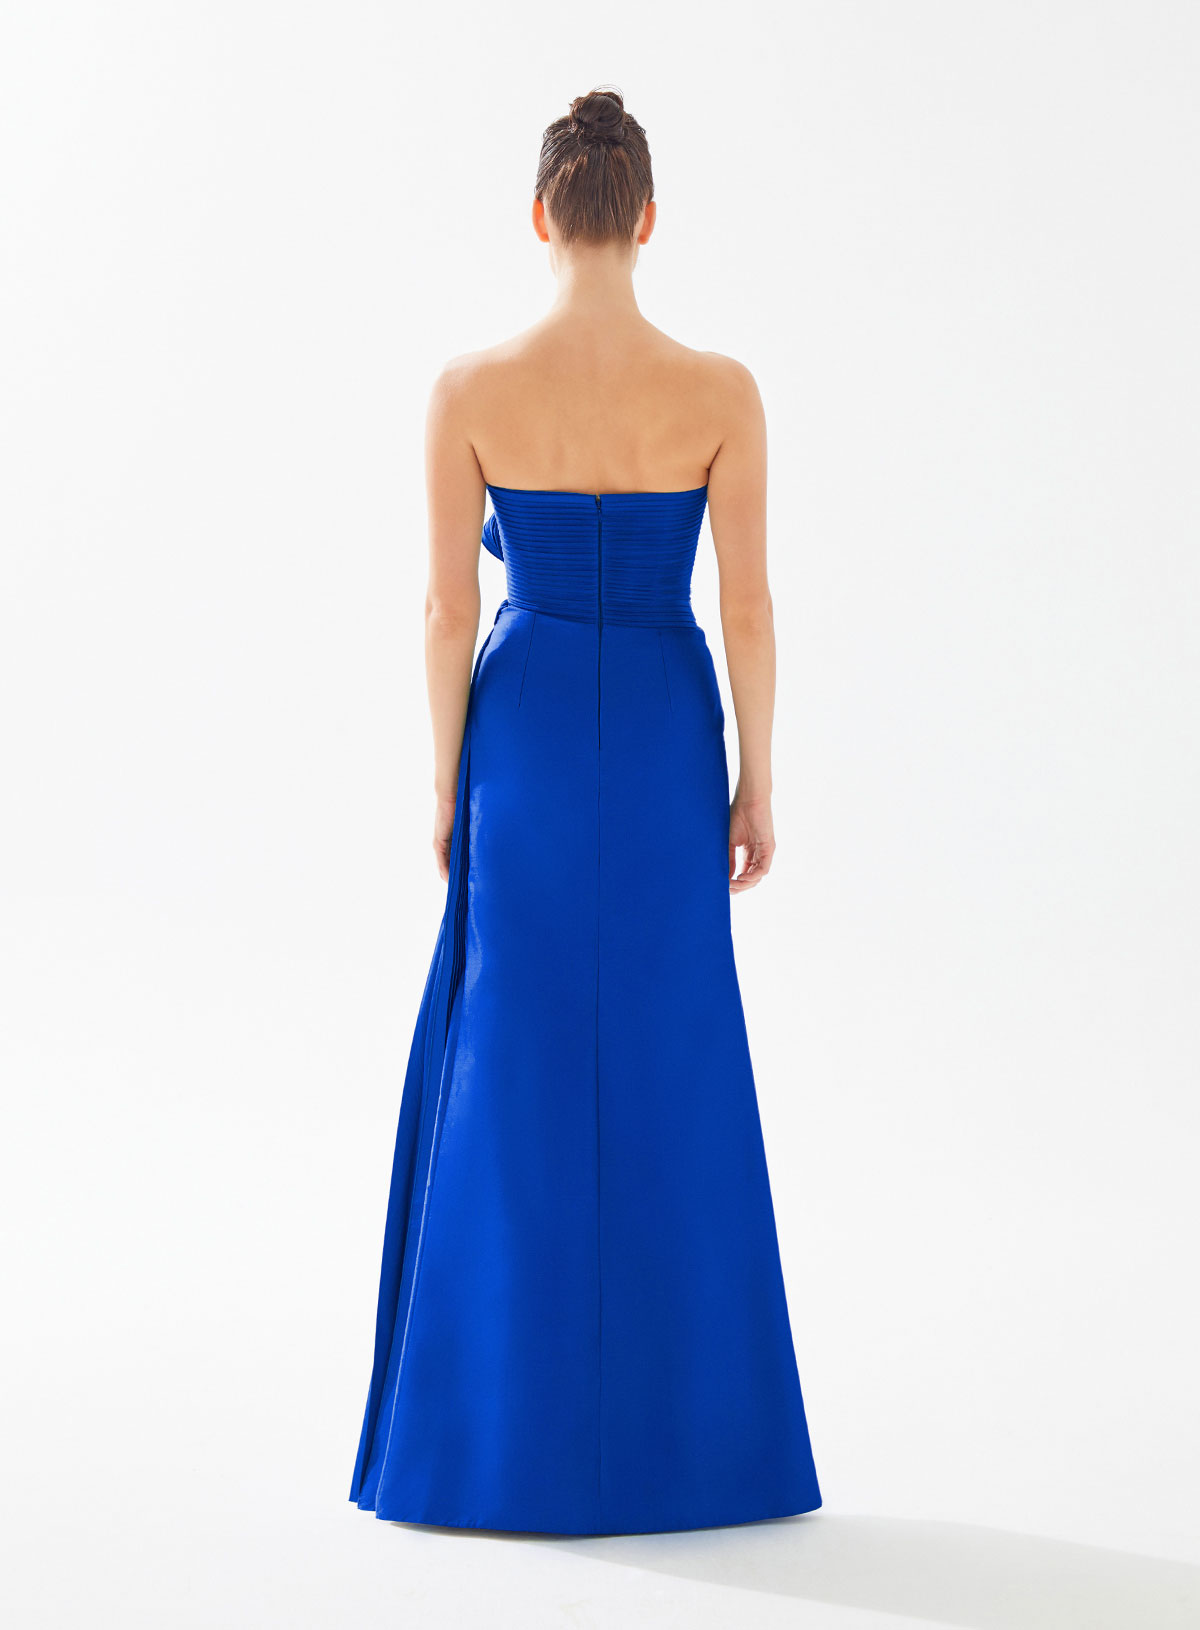 Picture of Peltz Blue Peltz Dress